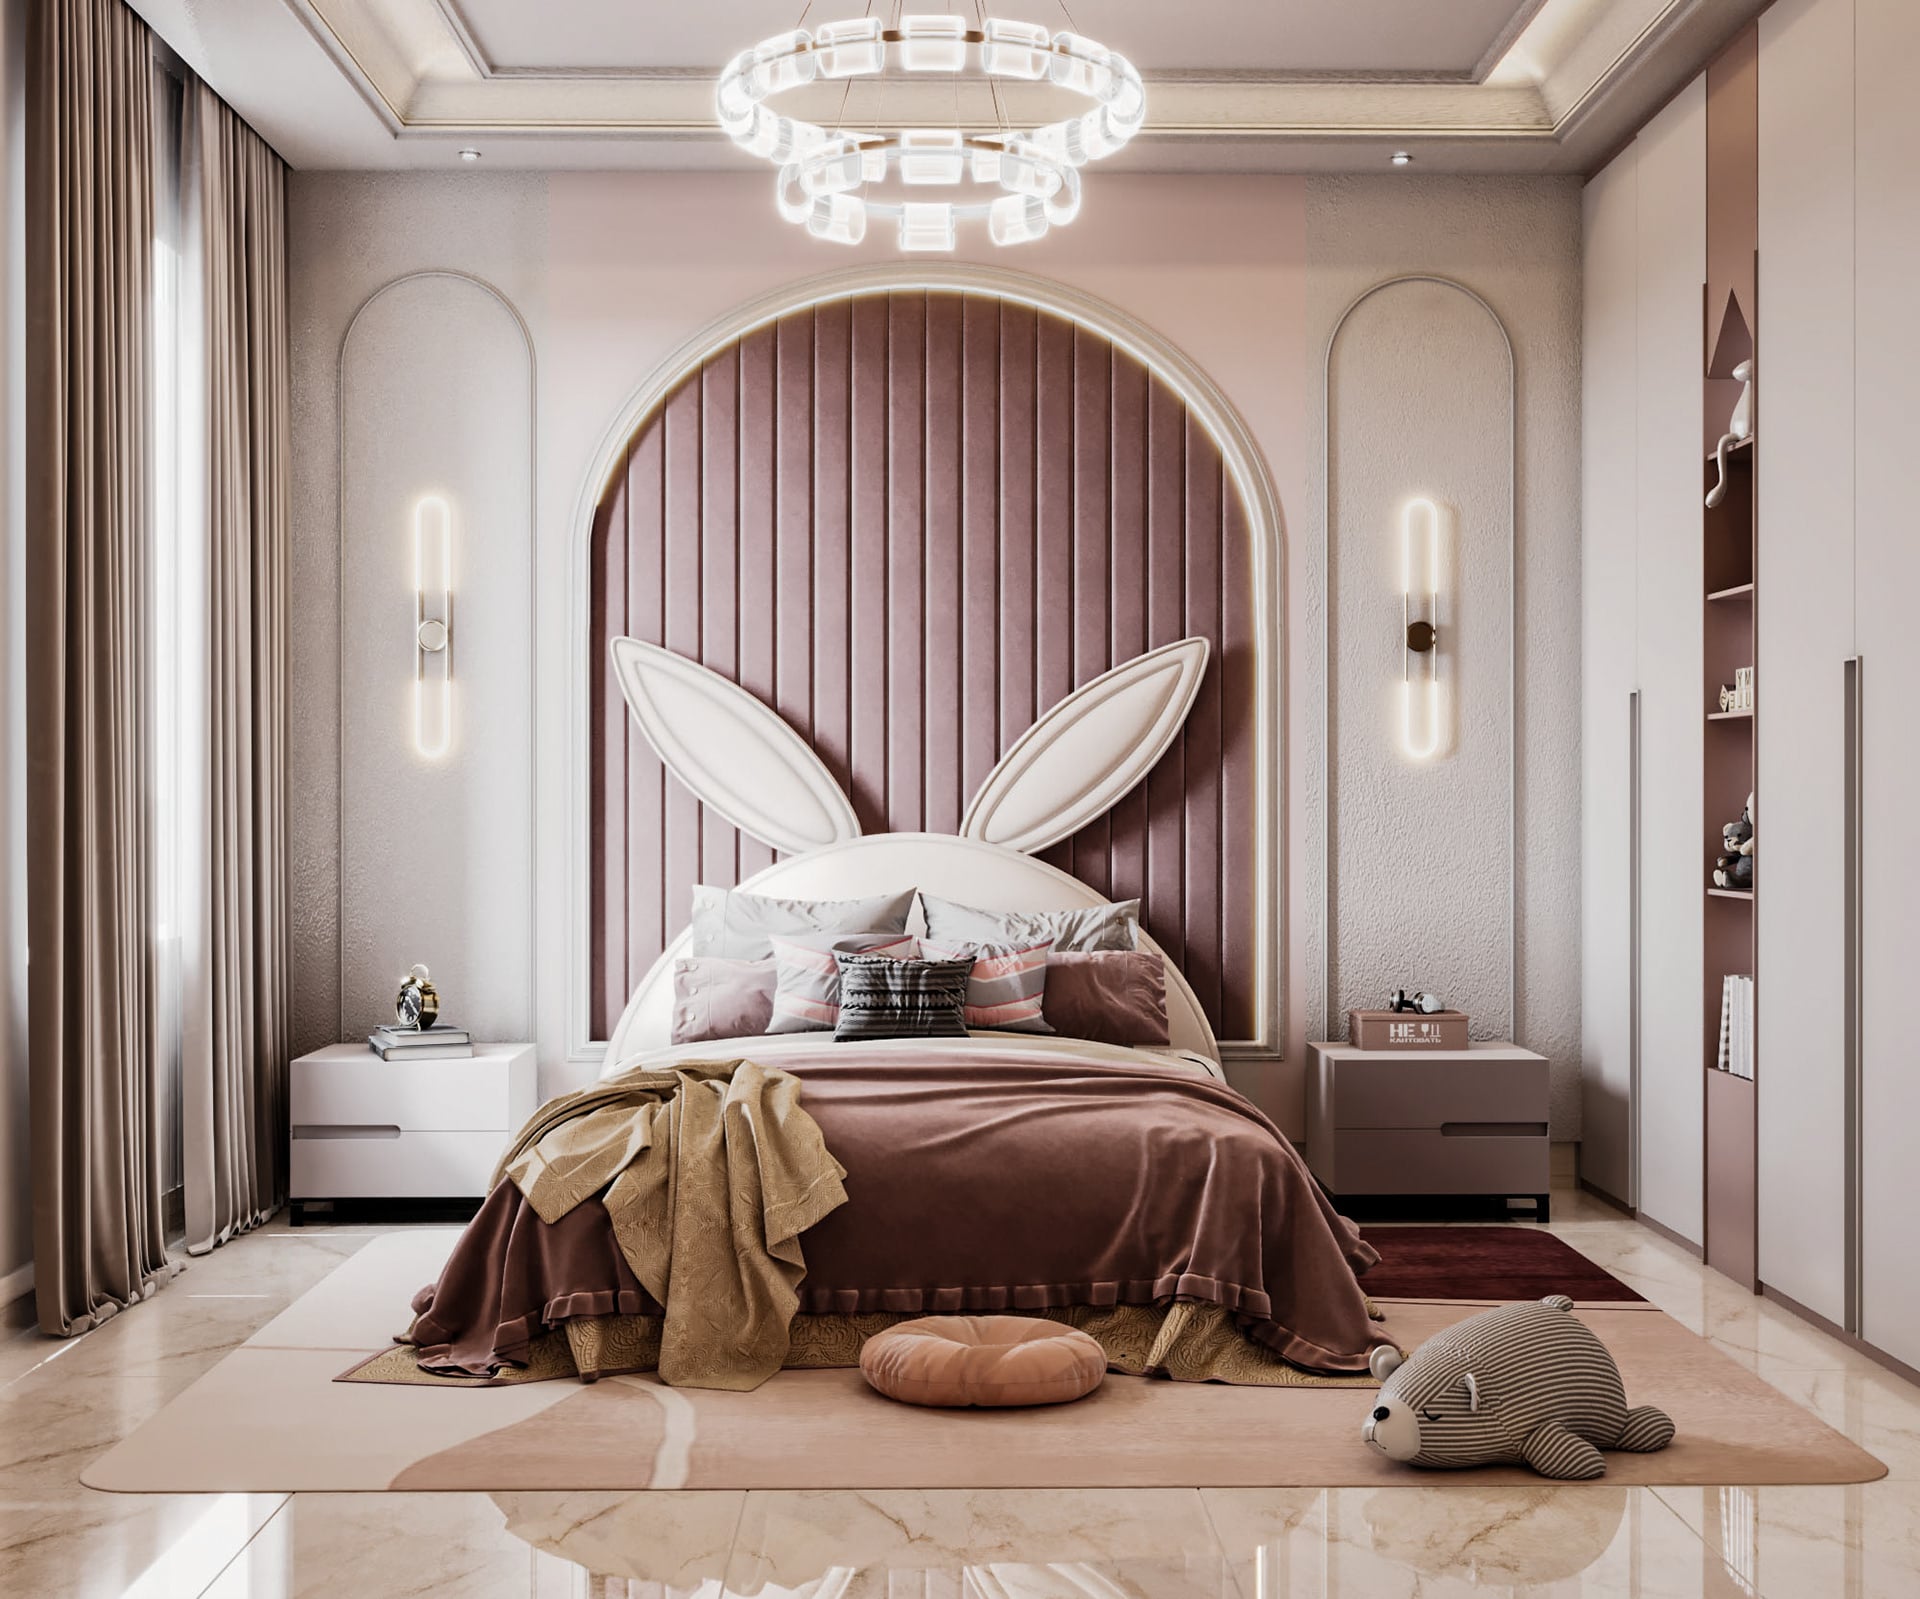 Trang trí phòng ngủ tinh tế, thu hút bằng cách lựa chọn những món đồ trang trí đơn giản